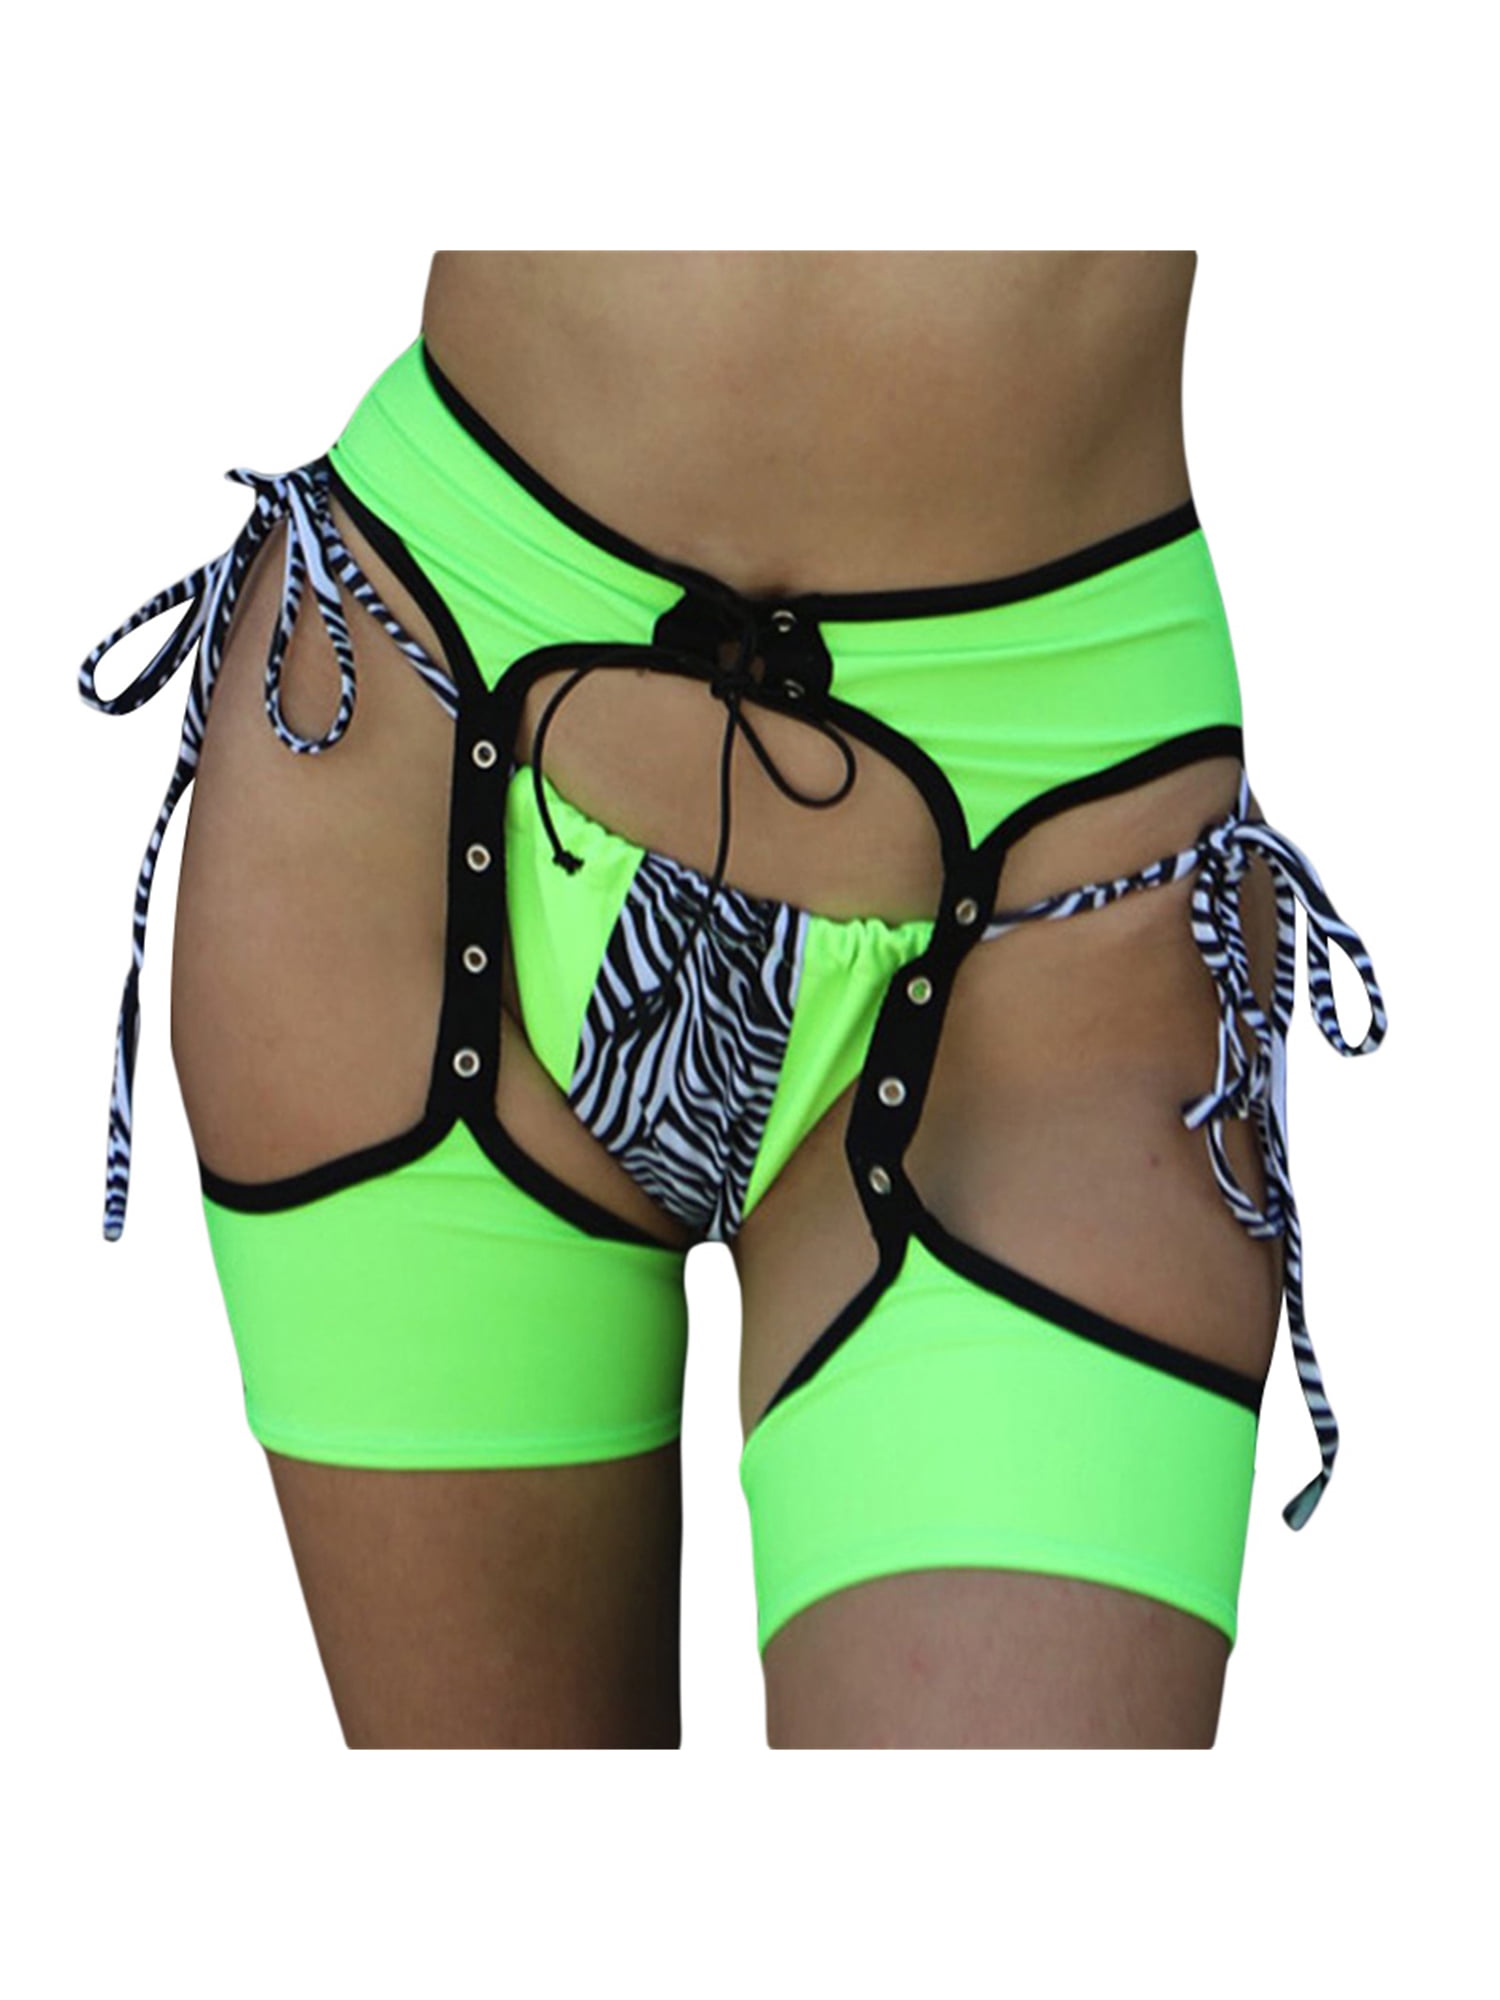 S-3XL High Waist Open Crotch Pants Girdle Garter belt w/ 6 Straps Suspender Belt